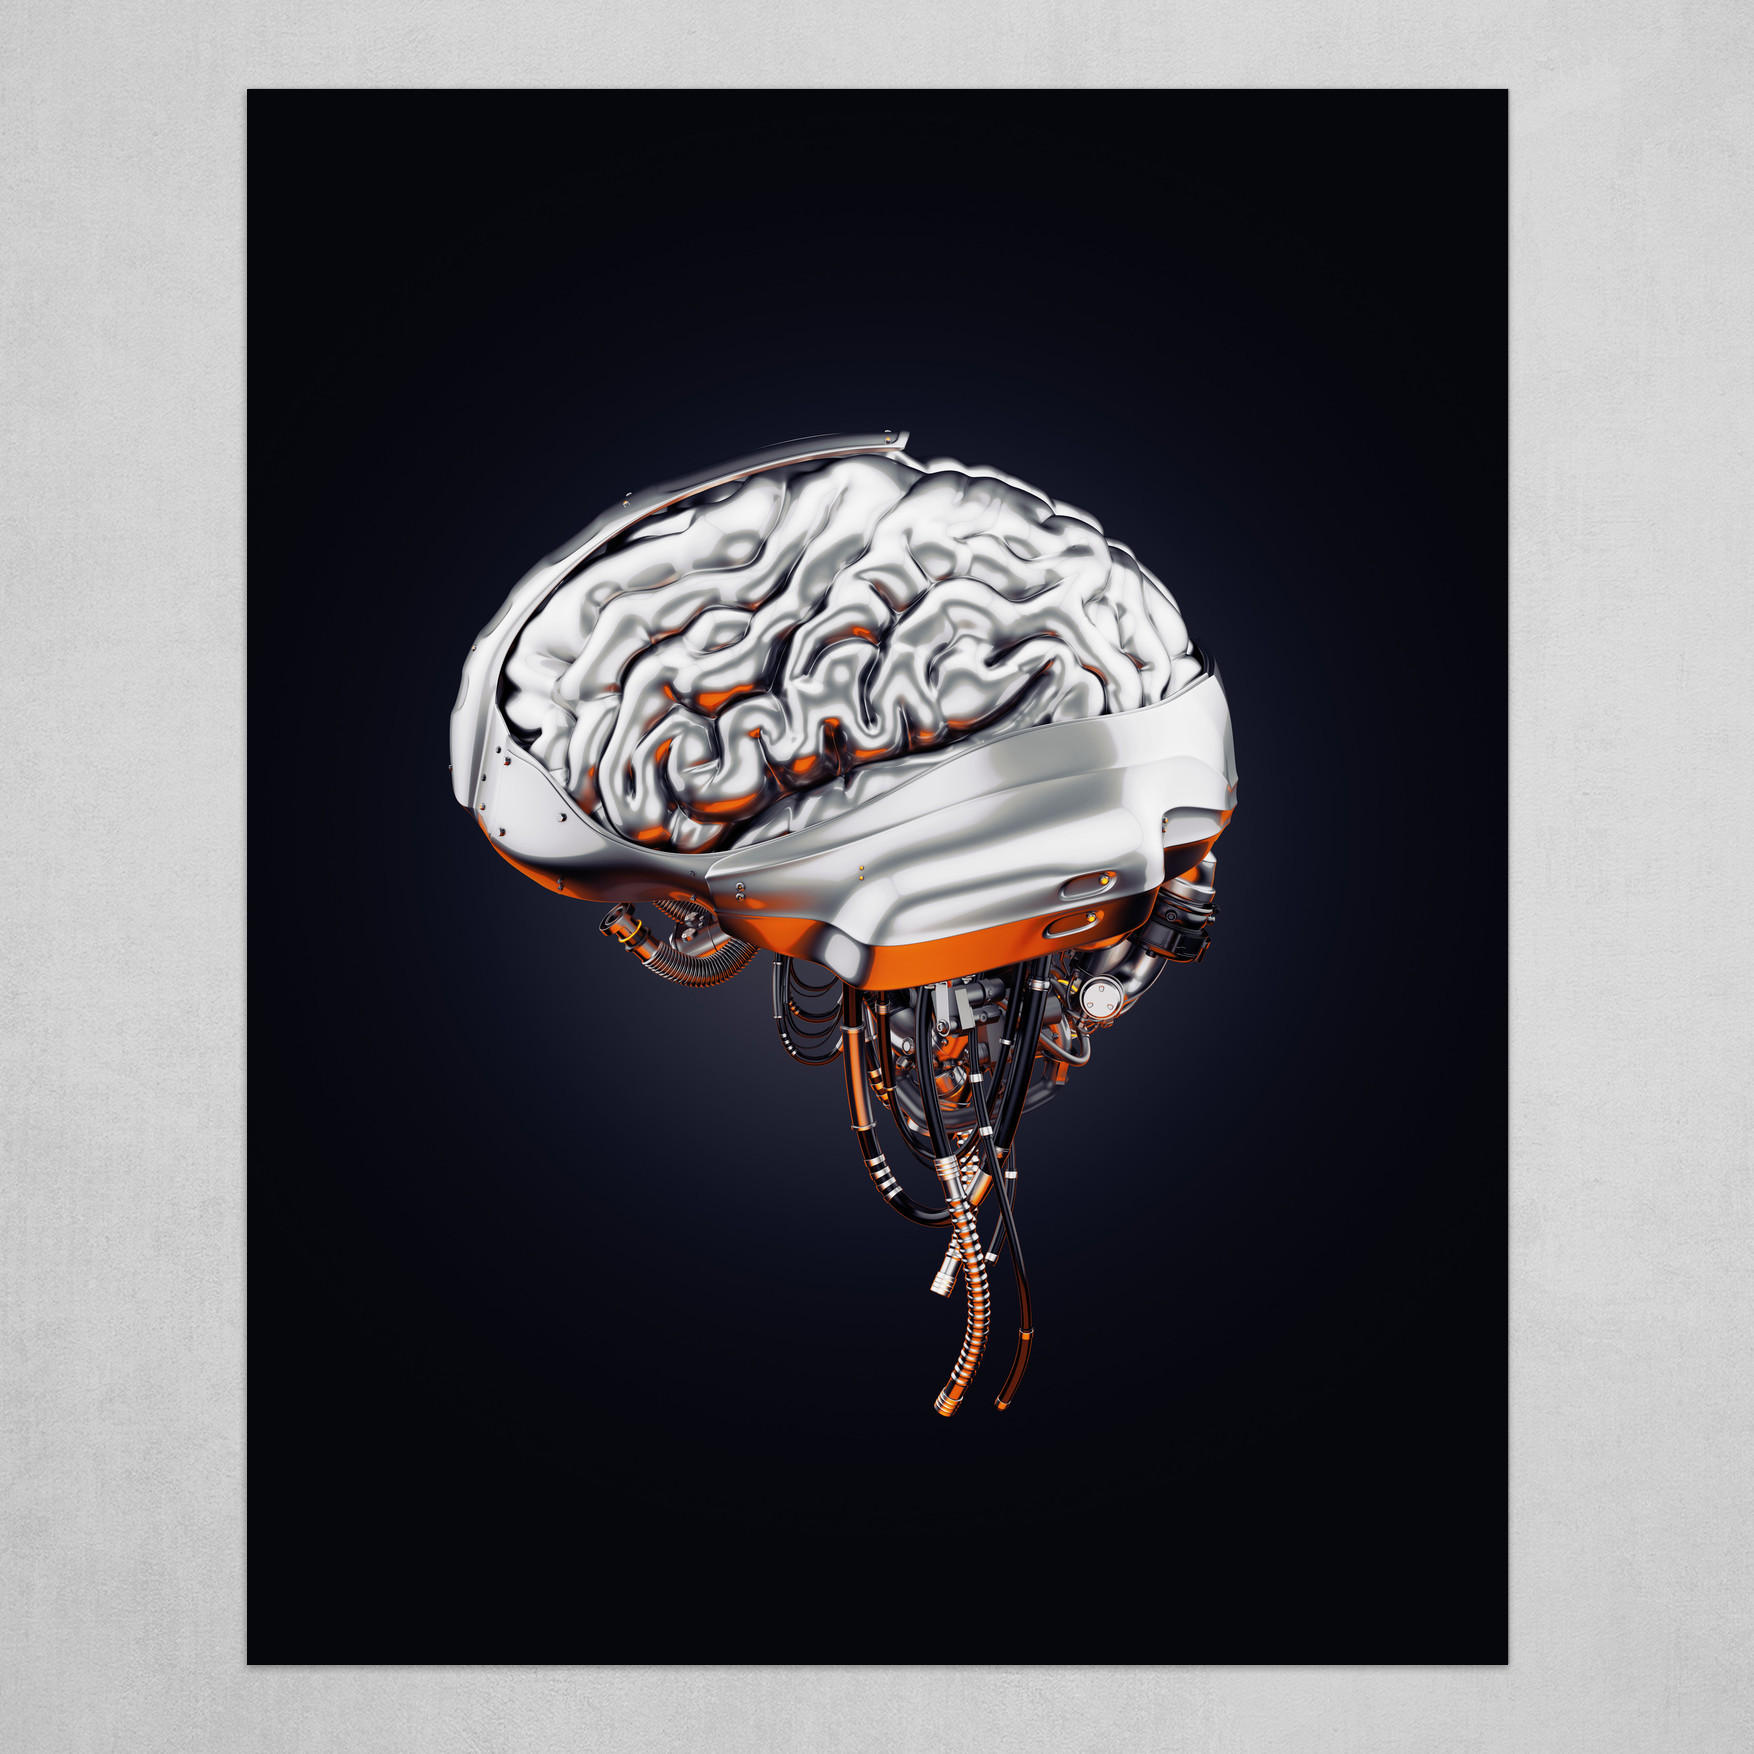 Steel robotic brain